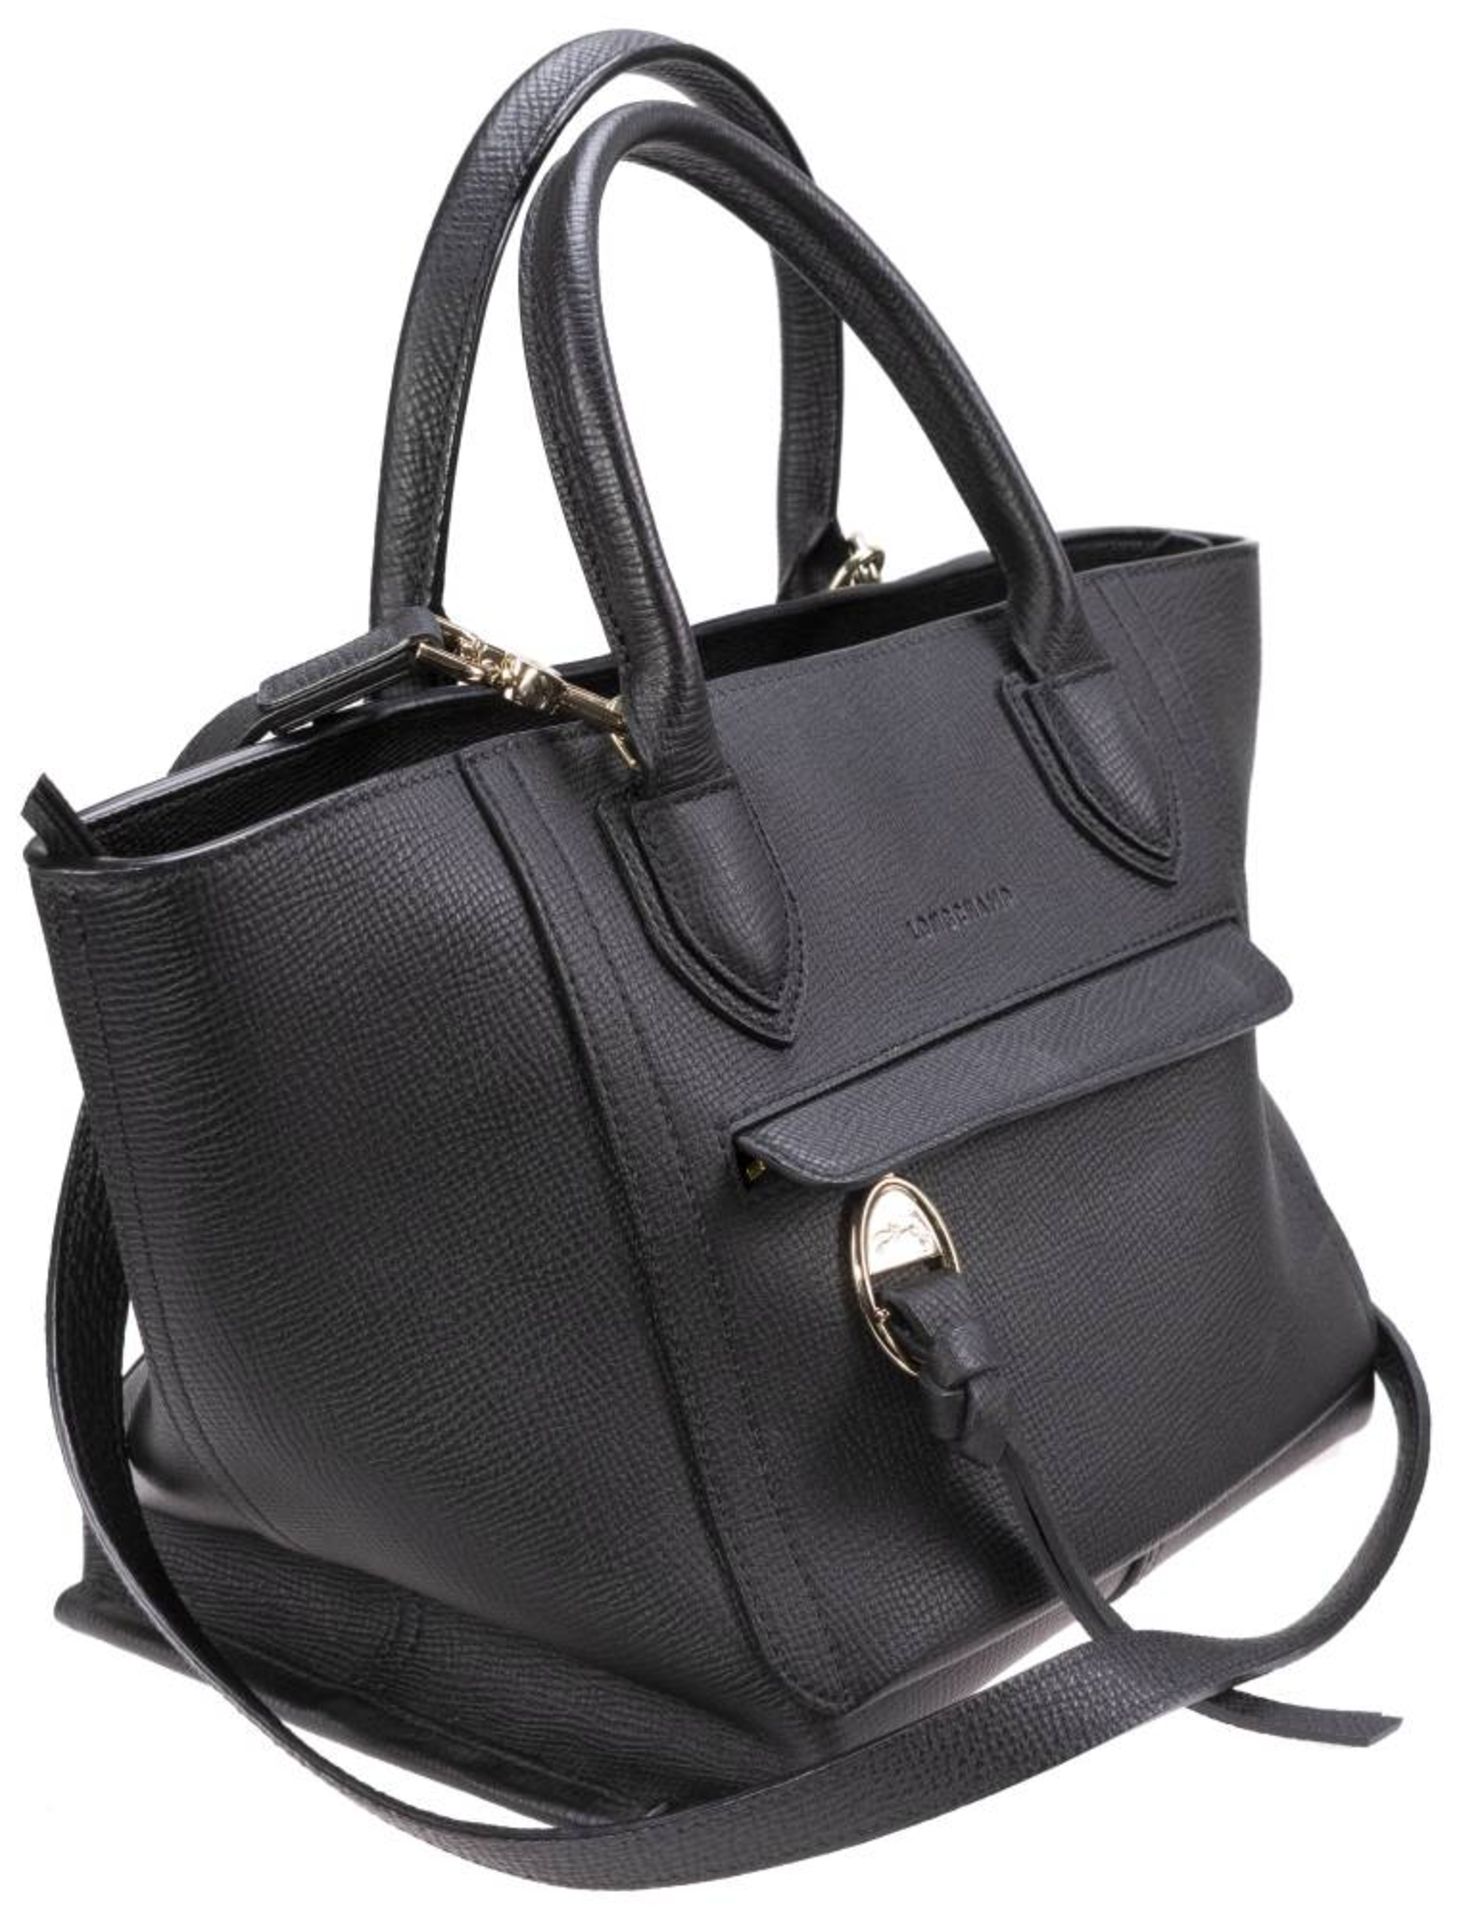 Longchamp Shopper, schwarzes Leder, goldfarbenes Metall, Außentasche mit Reißverschluss, innen